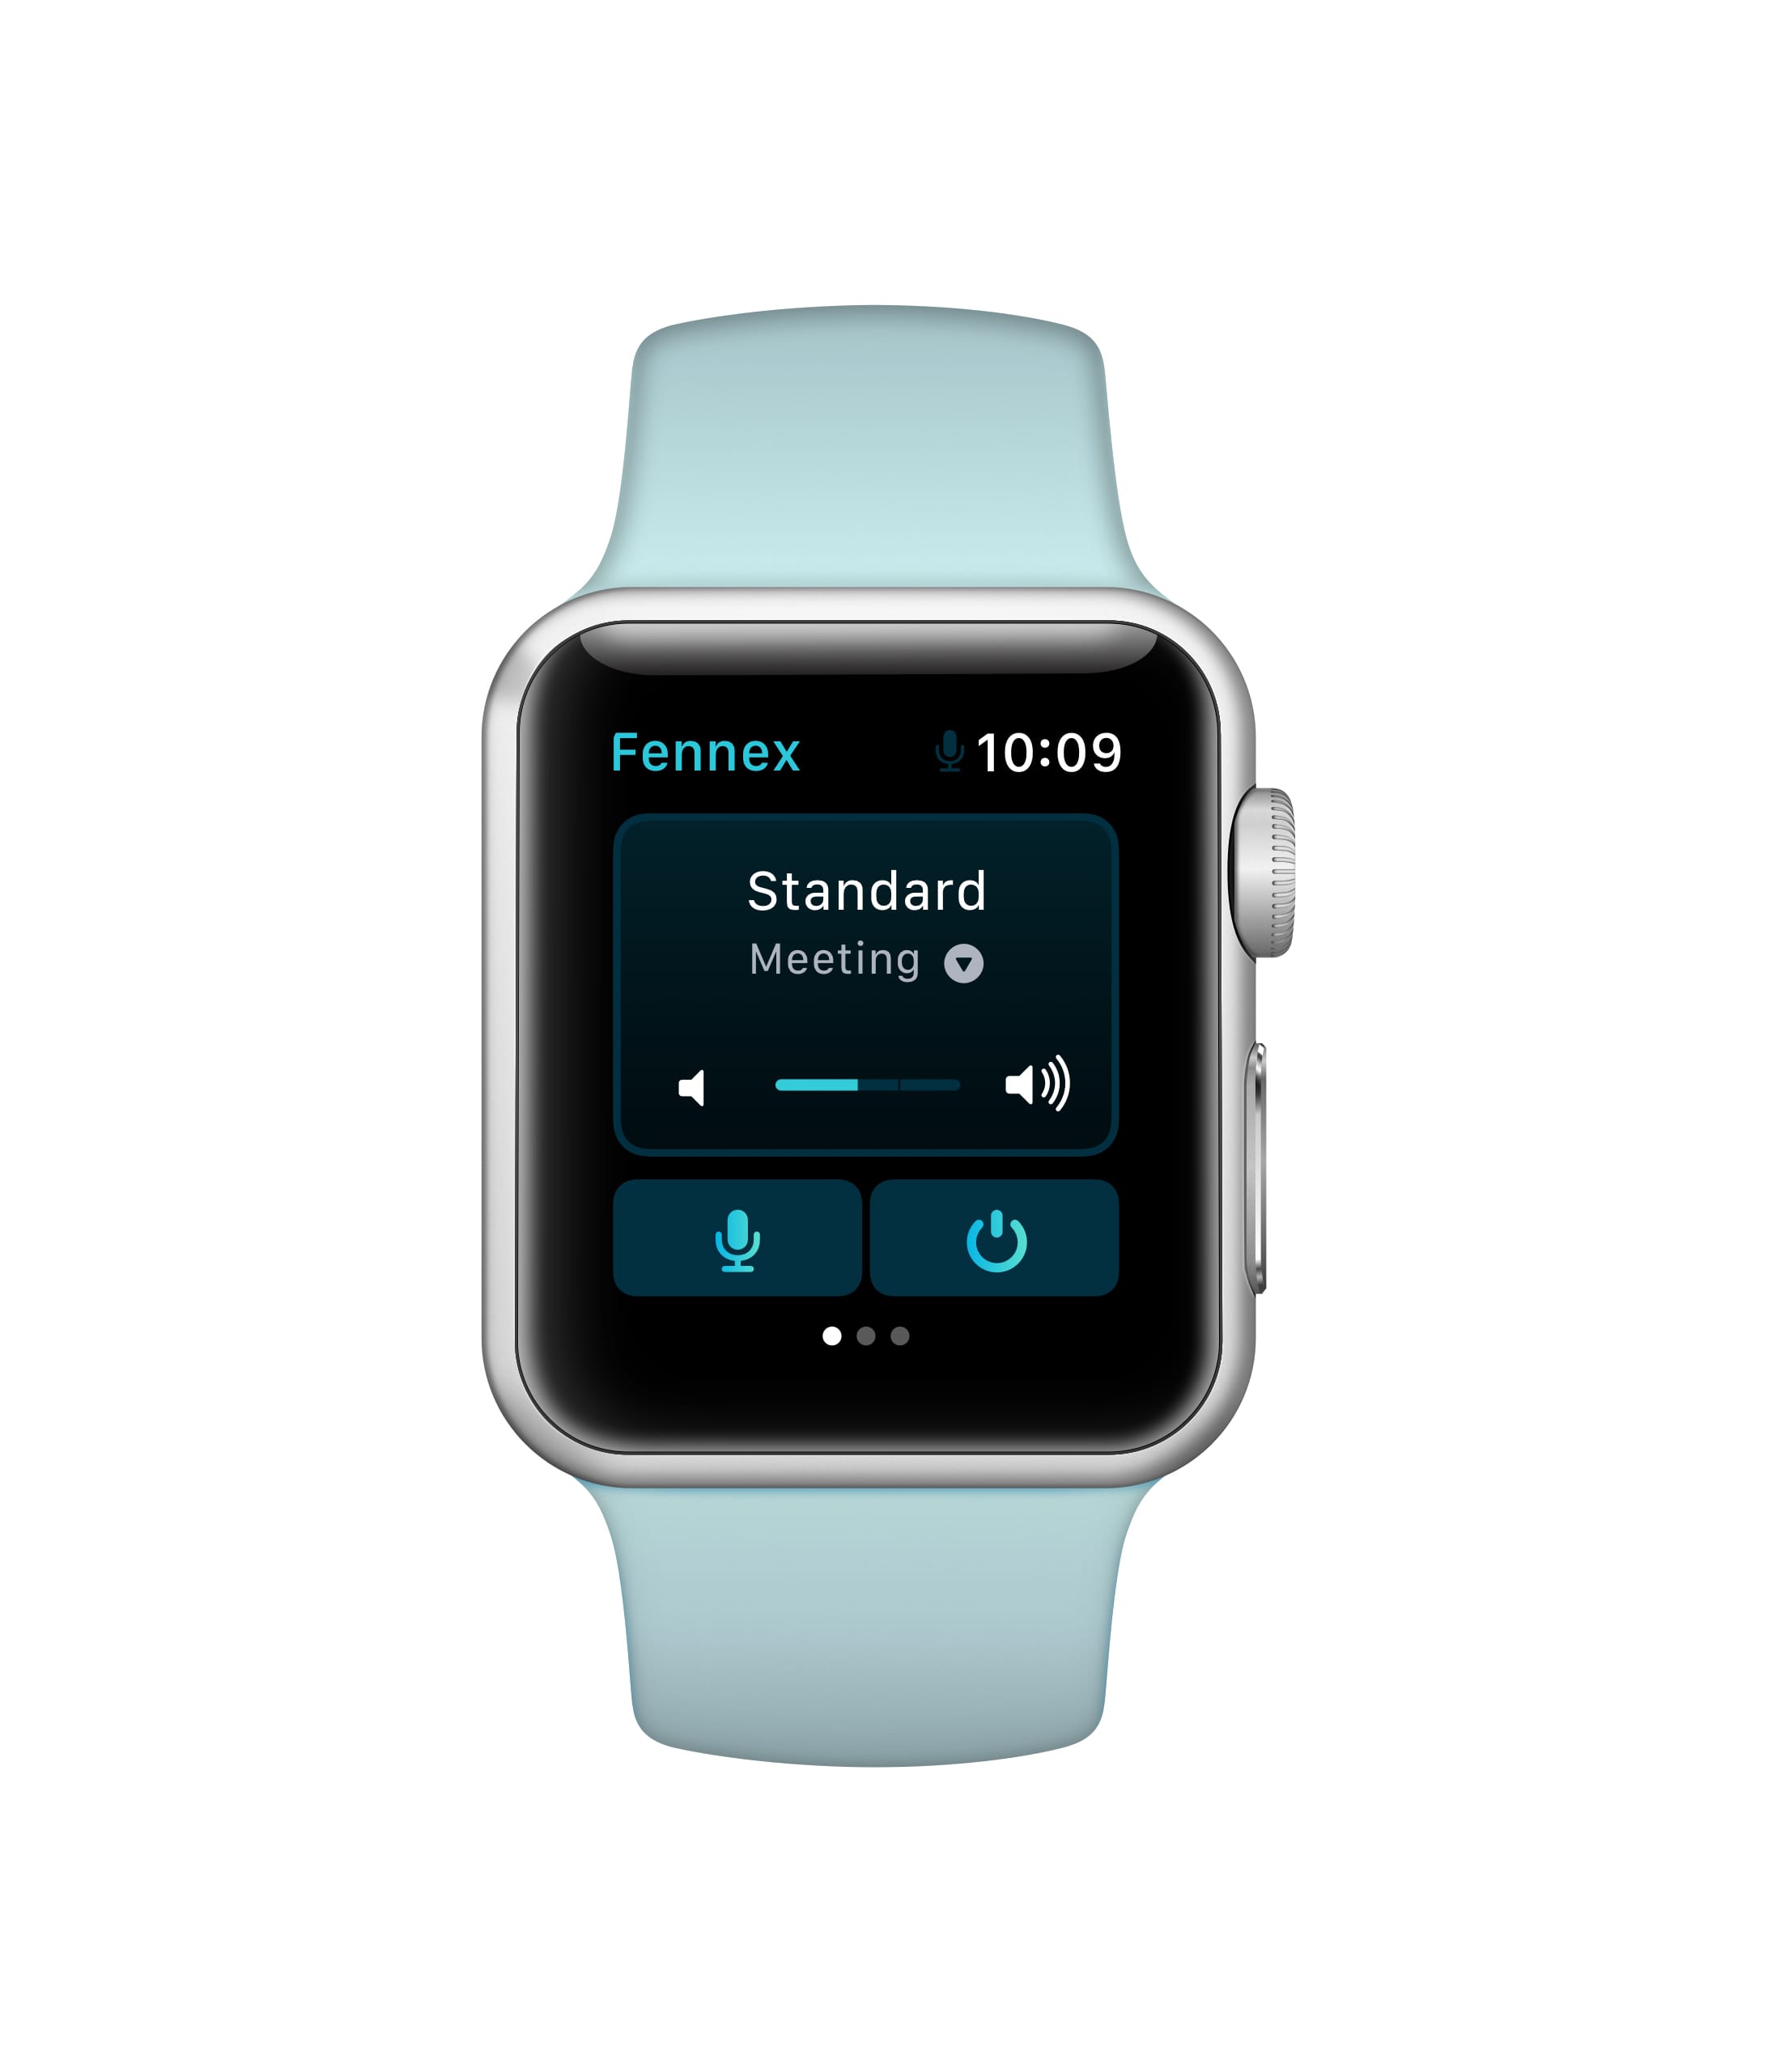 Fennex app watchOS UI home interface